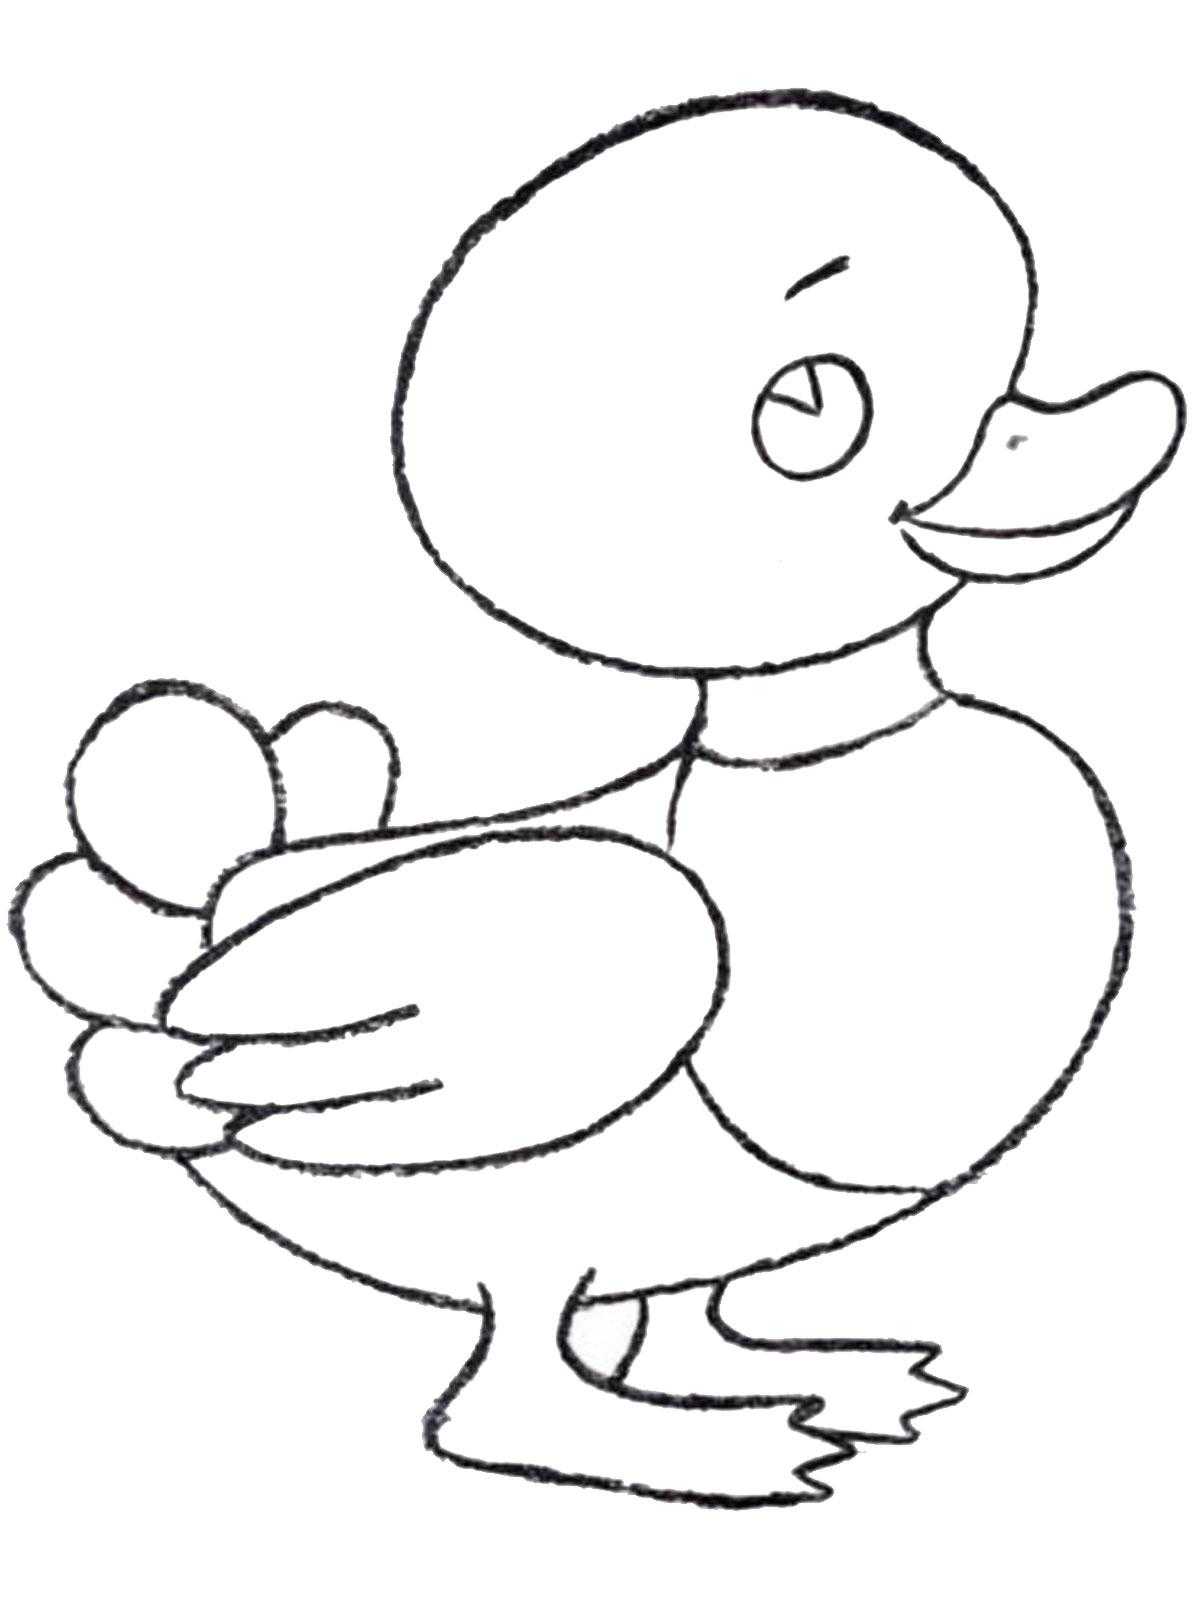 Название: Раскраска Рисунок утки. Категория: домашние животные. Теги: утка.